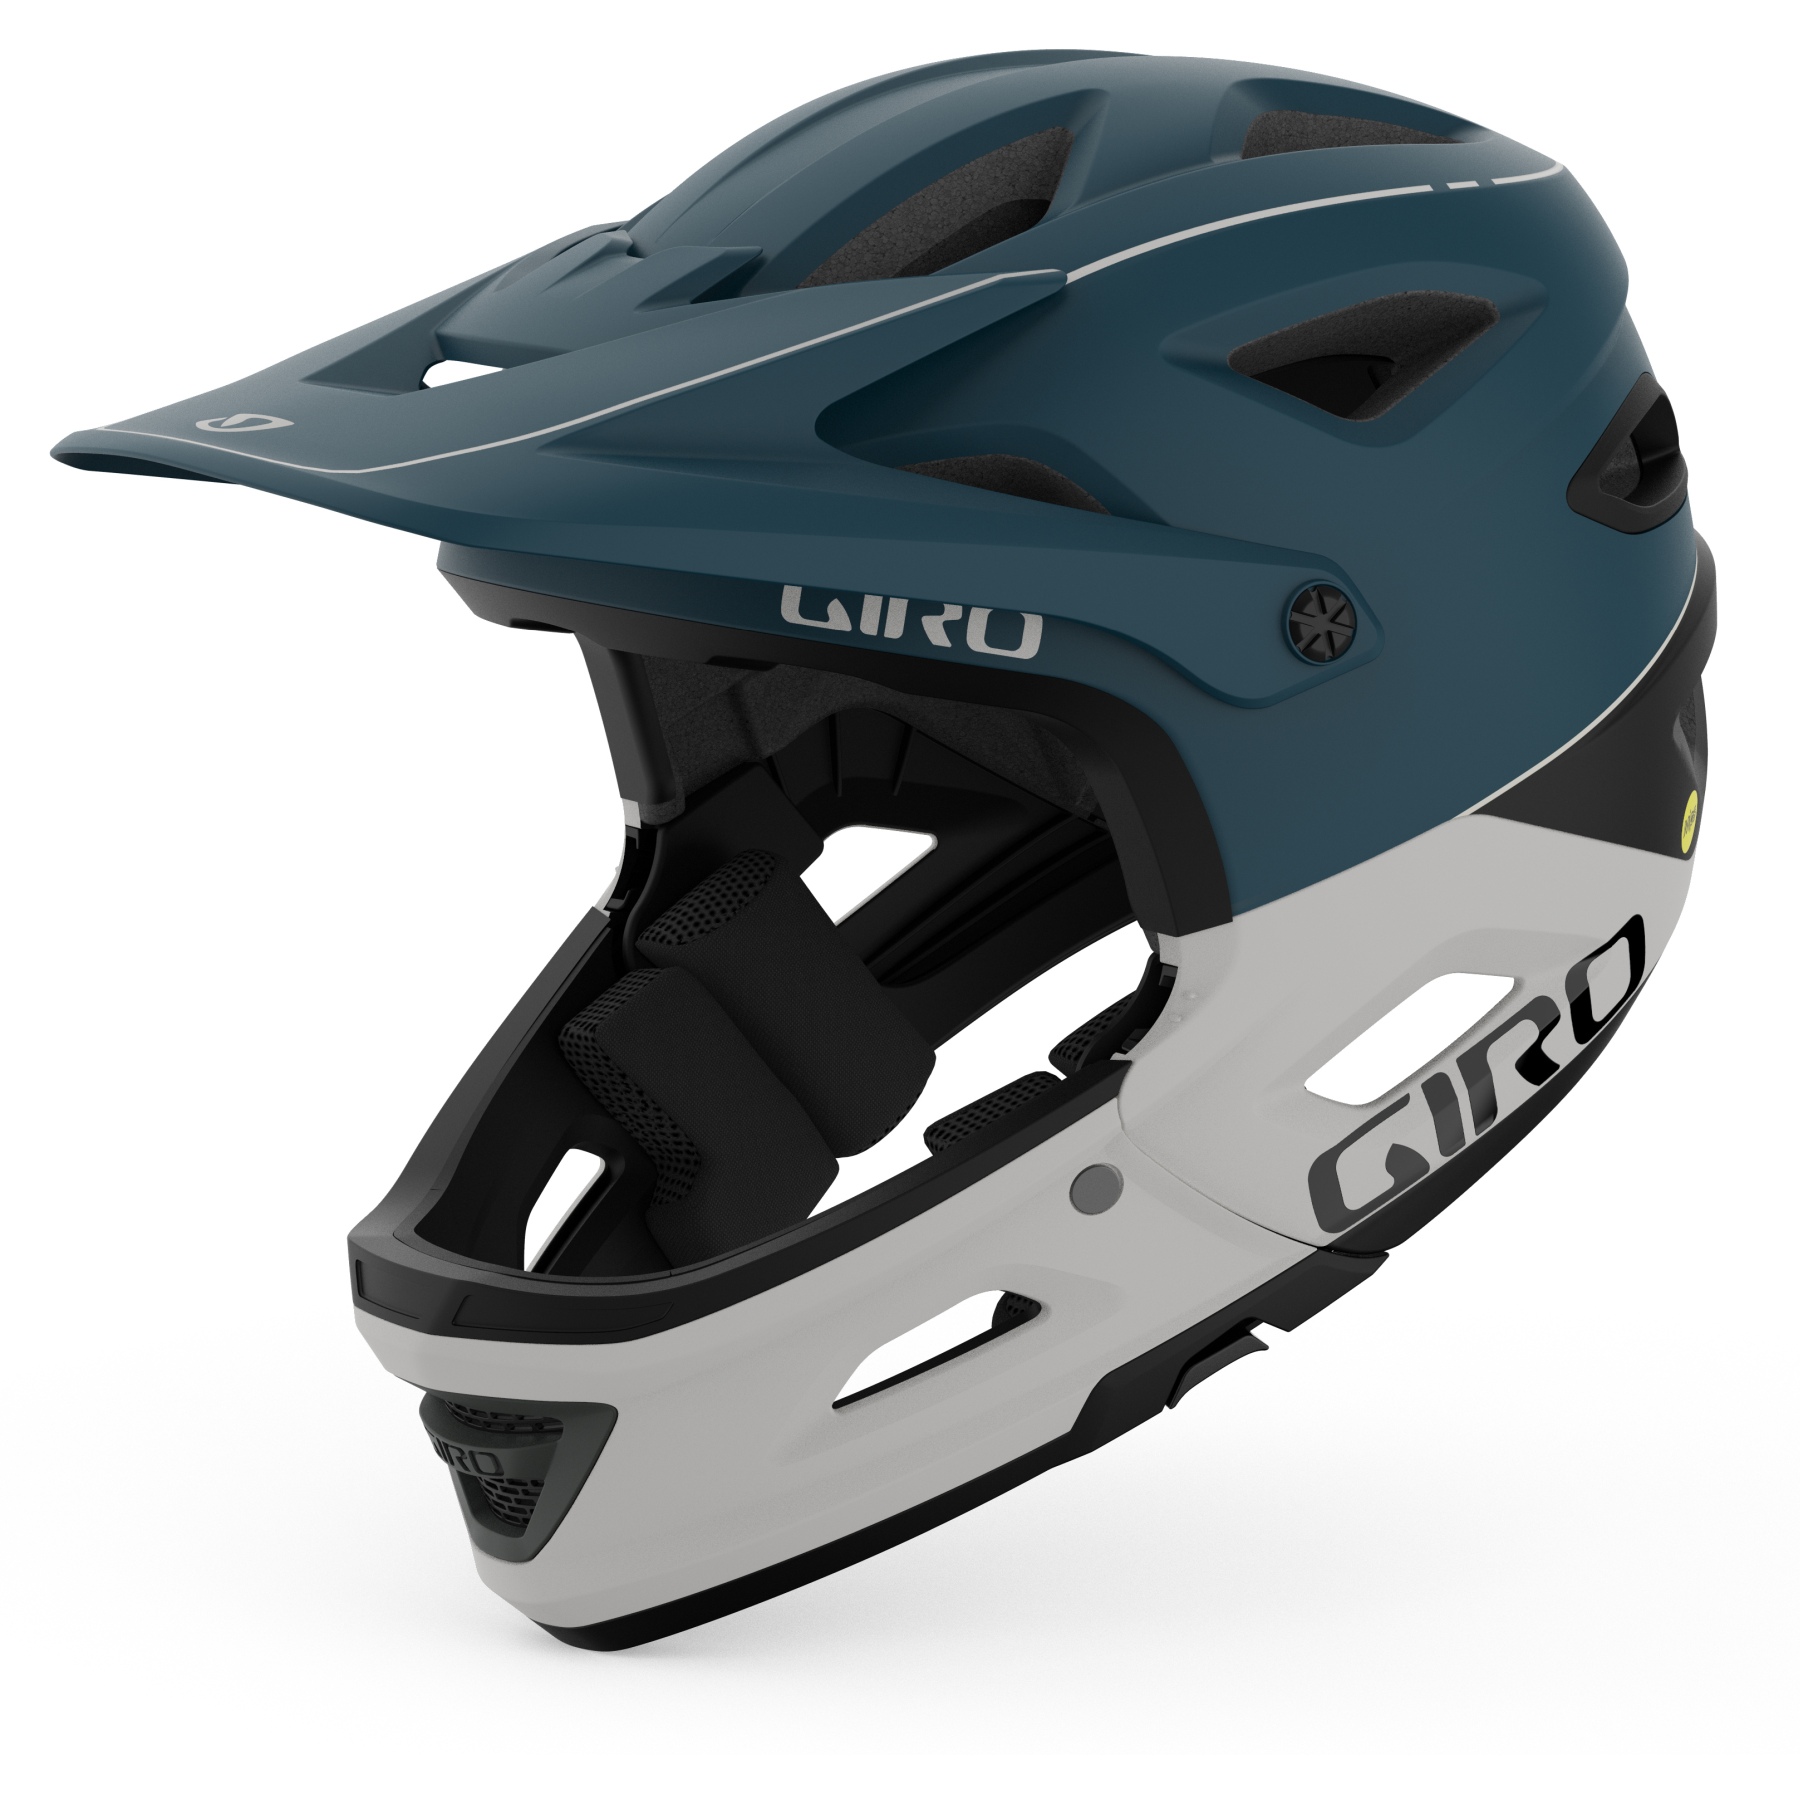 Produktbild von Giro Switchblade MIPS Helm - matte harbor blue